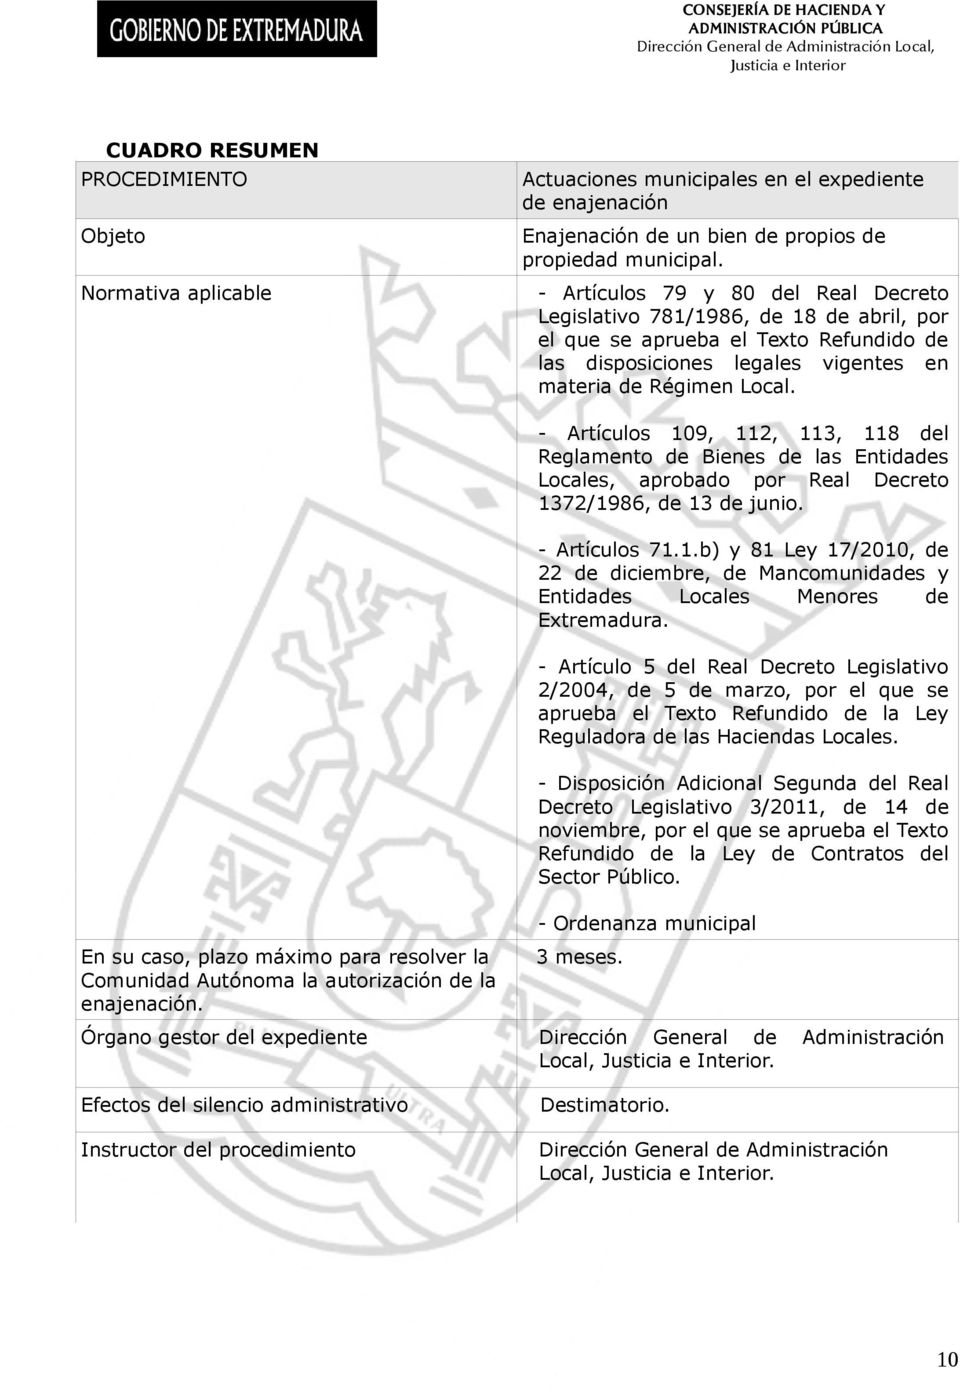 - Artículos 109, 112, 113, 118 del Reglamento de Bienes de las Entidades Locales, aprobado por Real Decreto 1372/1986, de 13 de junio. - Artículos 71.1.b) y 81 Ley 17/2010, de 22 de diciembre, de Mancomunidades y Entidades Locales Menores de Extremadura.